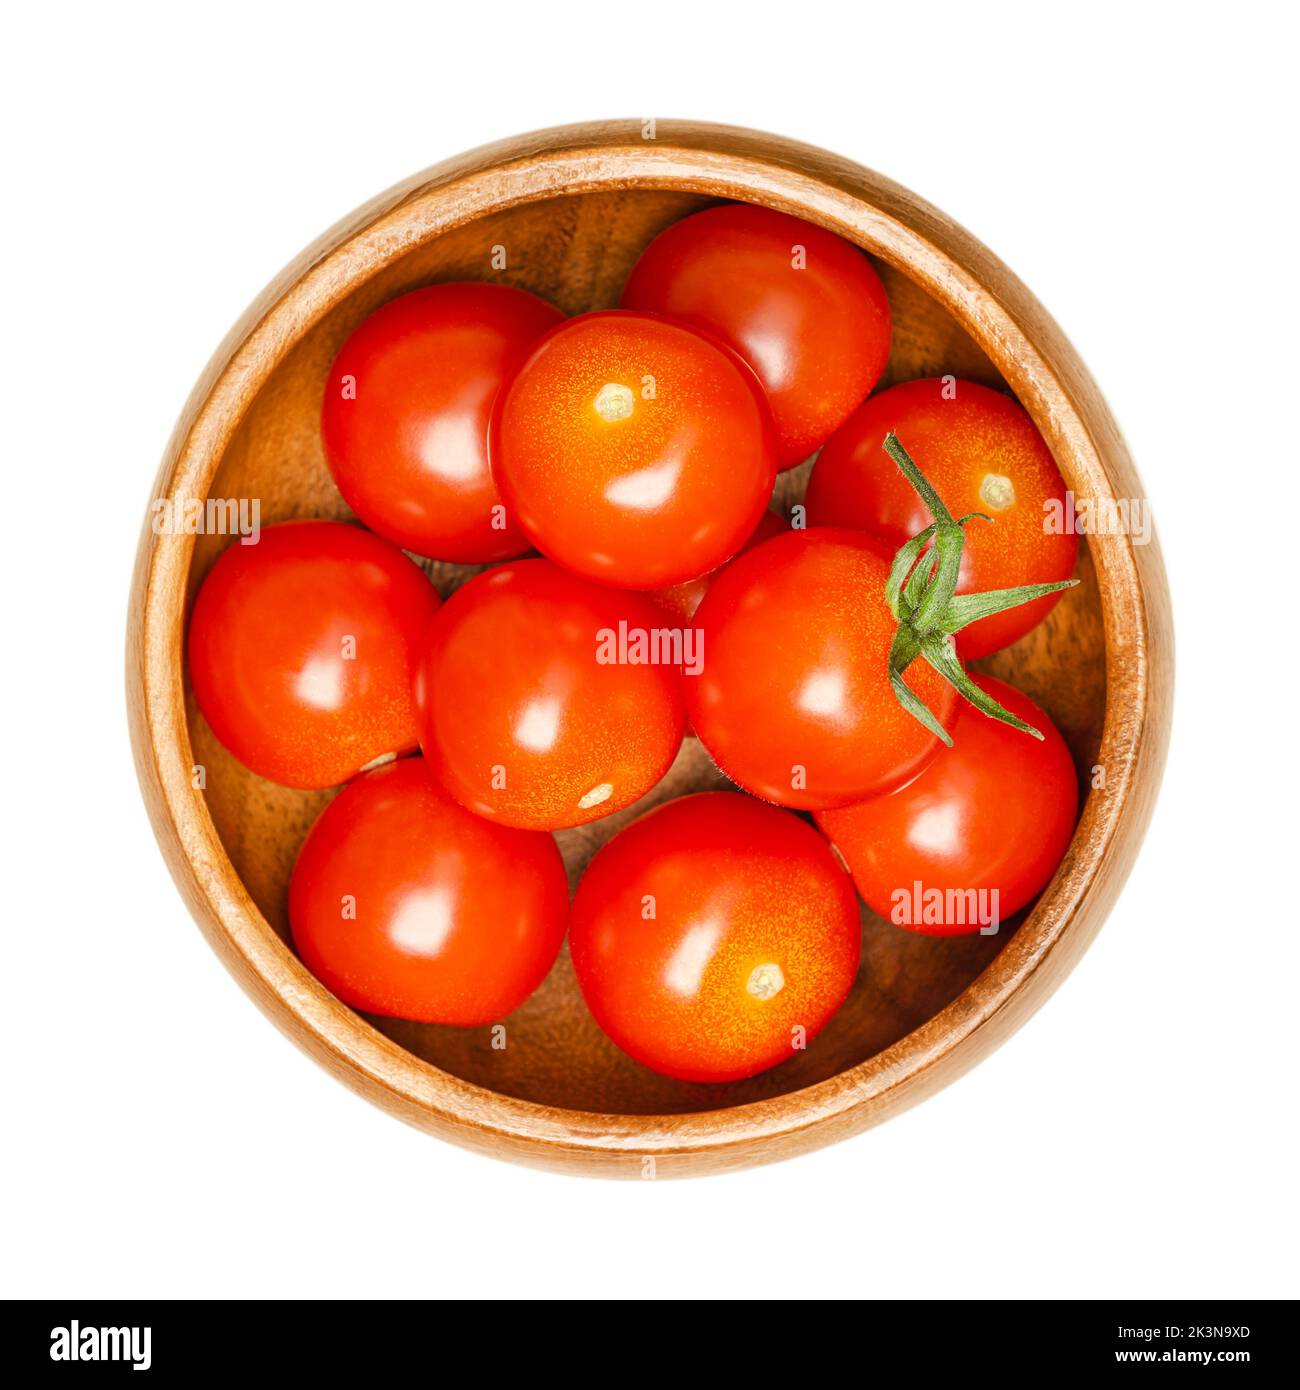 Tomates cherry, en un bol de madera. Tipo fresco y maduro de tomates de cóctel rojos, pequeños y redondos, Solanum lycopersicum var. Cerasiforme. Foto de stock